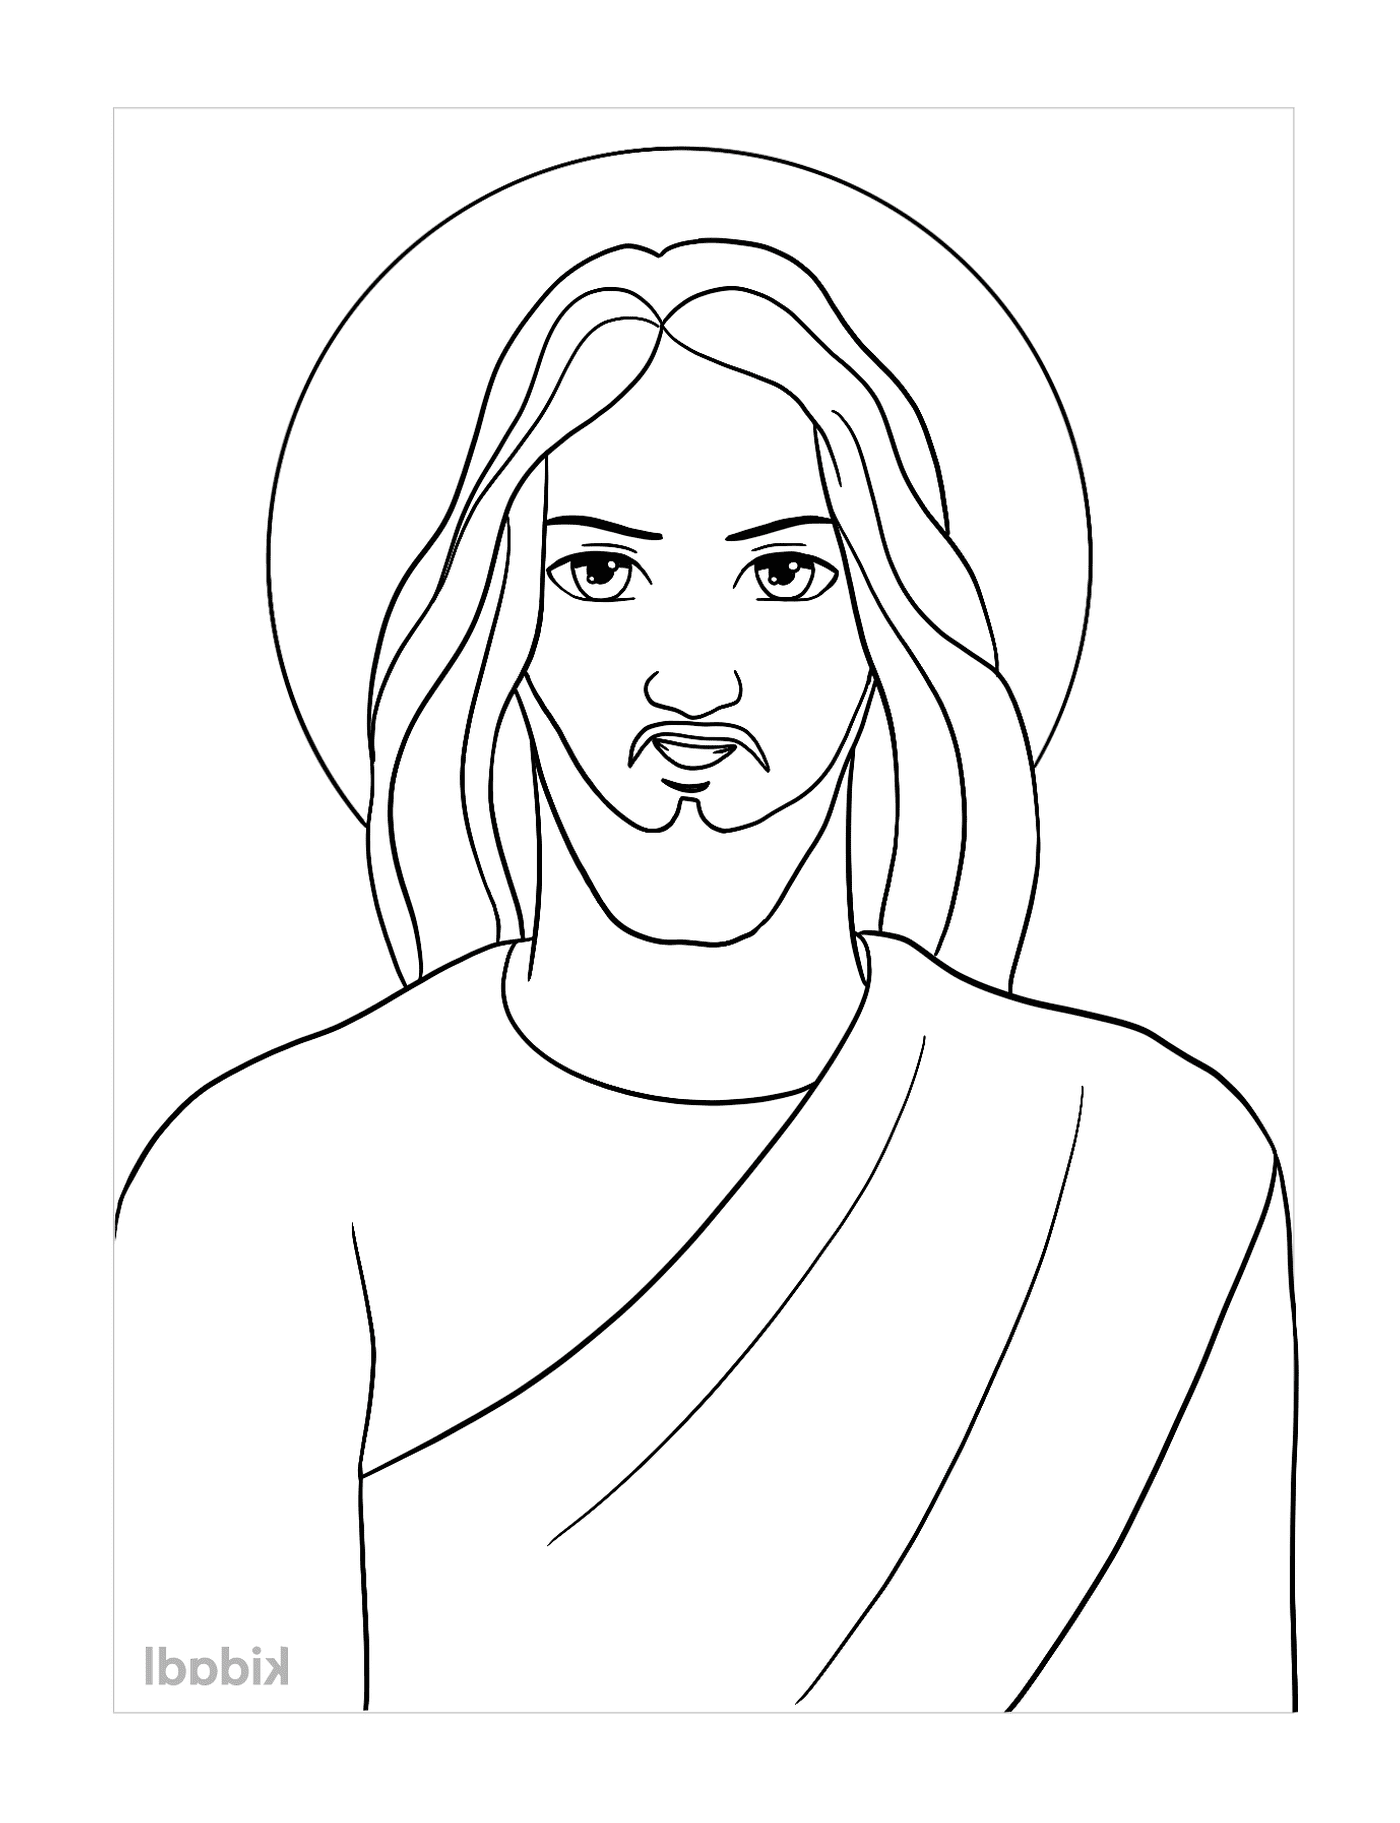  Gesù nel cartone animato, un uomo con la barba 